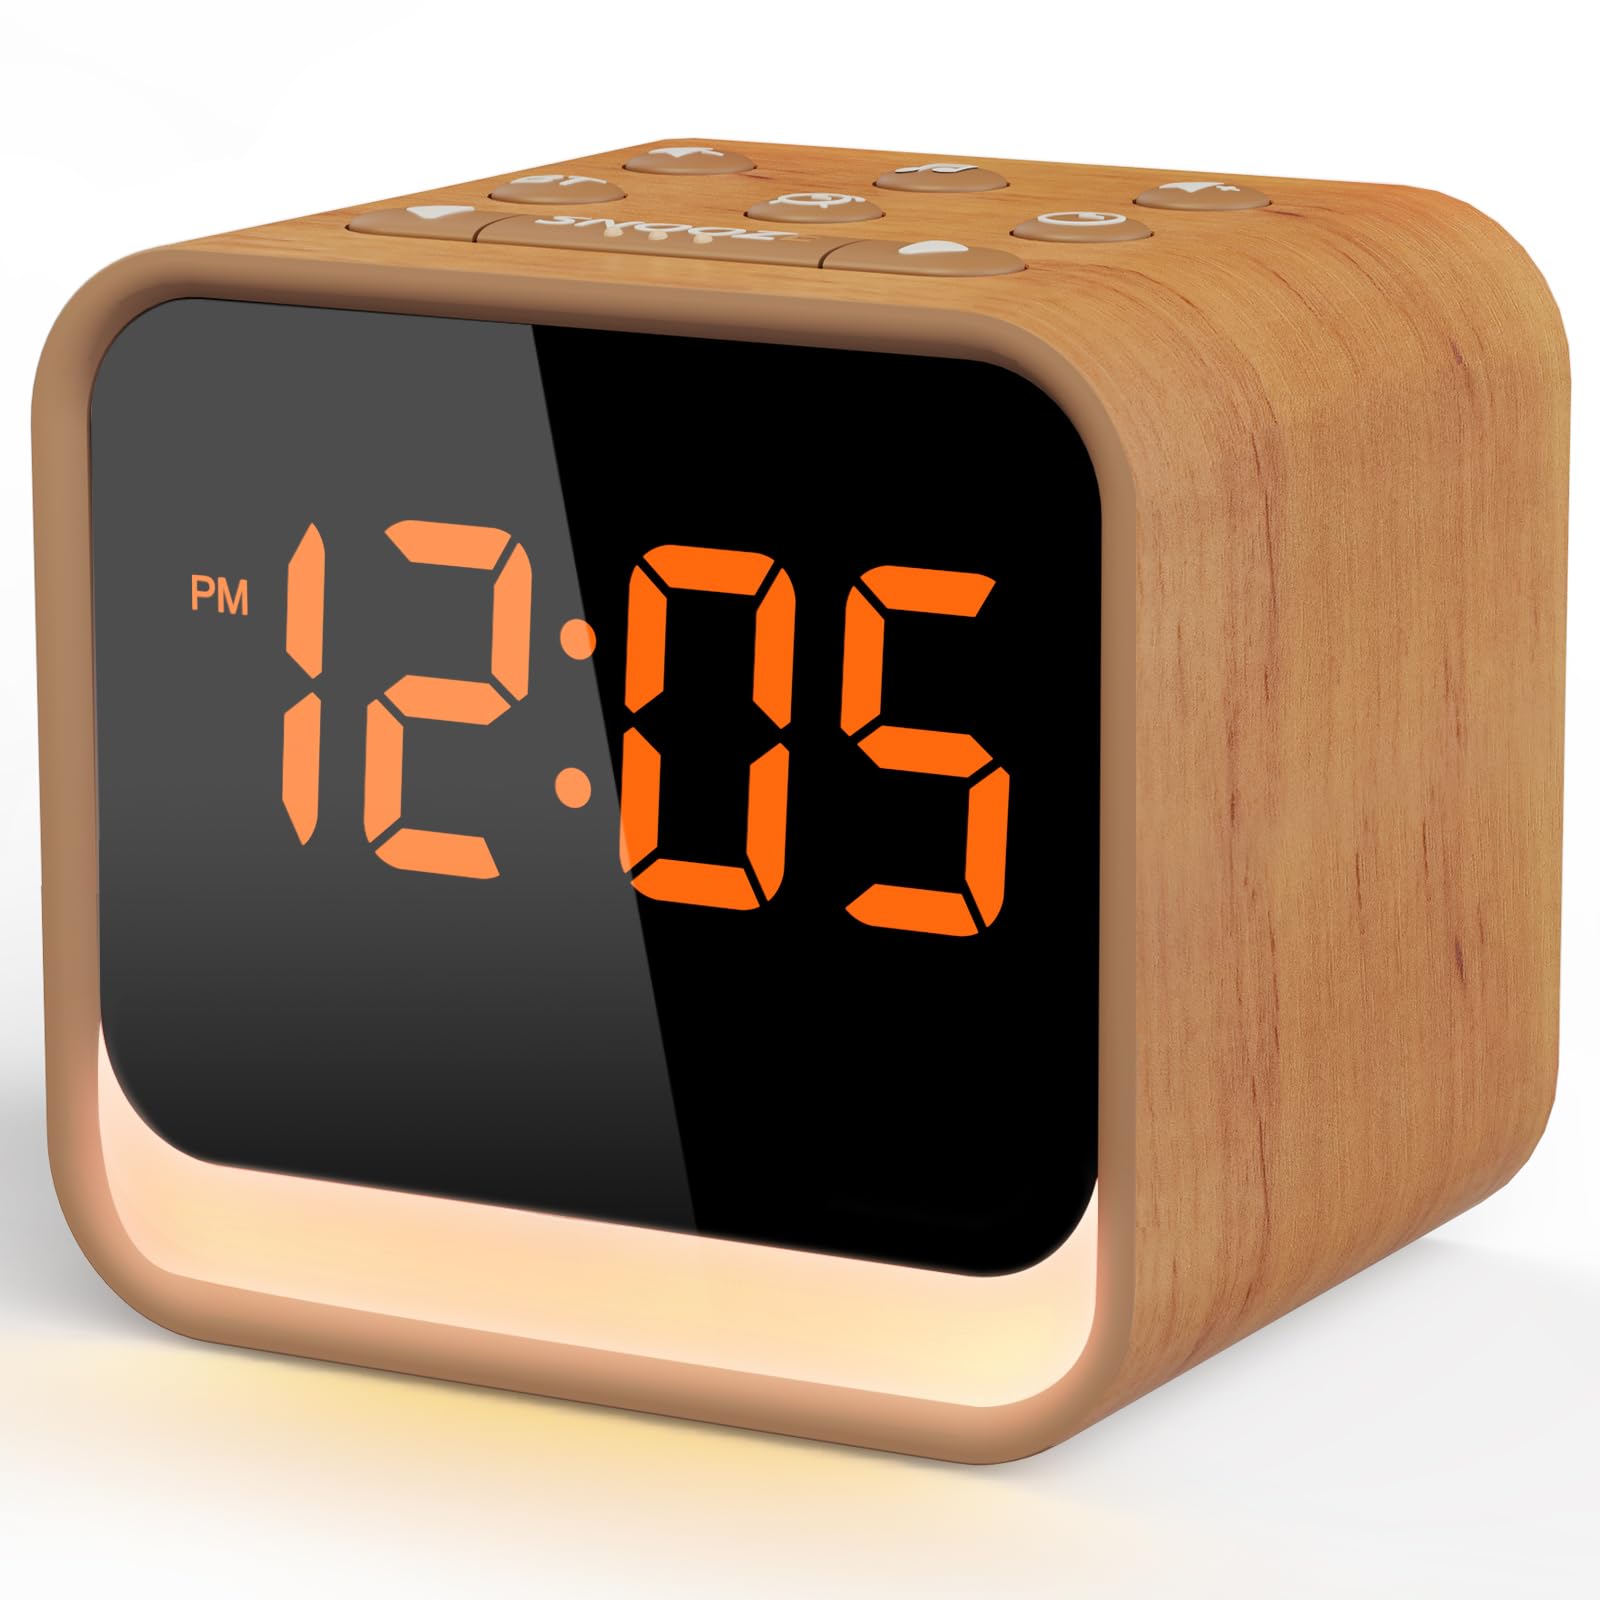 Housbay 1Der Sound Machine with Alarm Clock